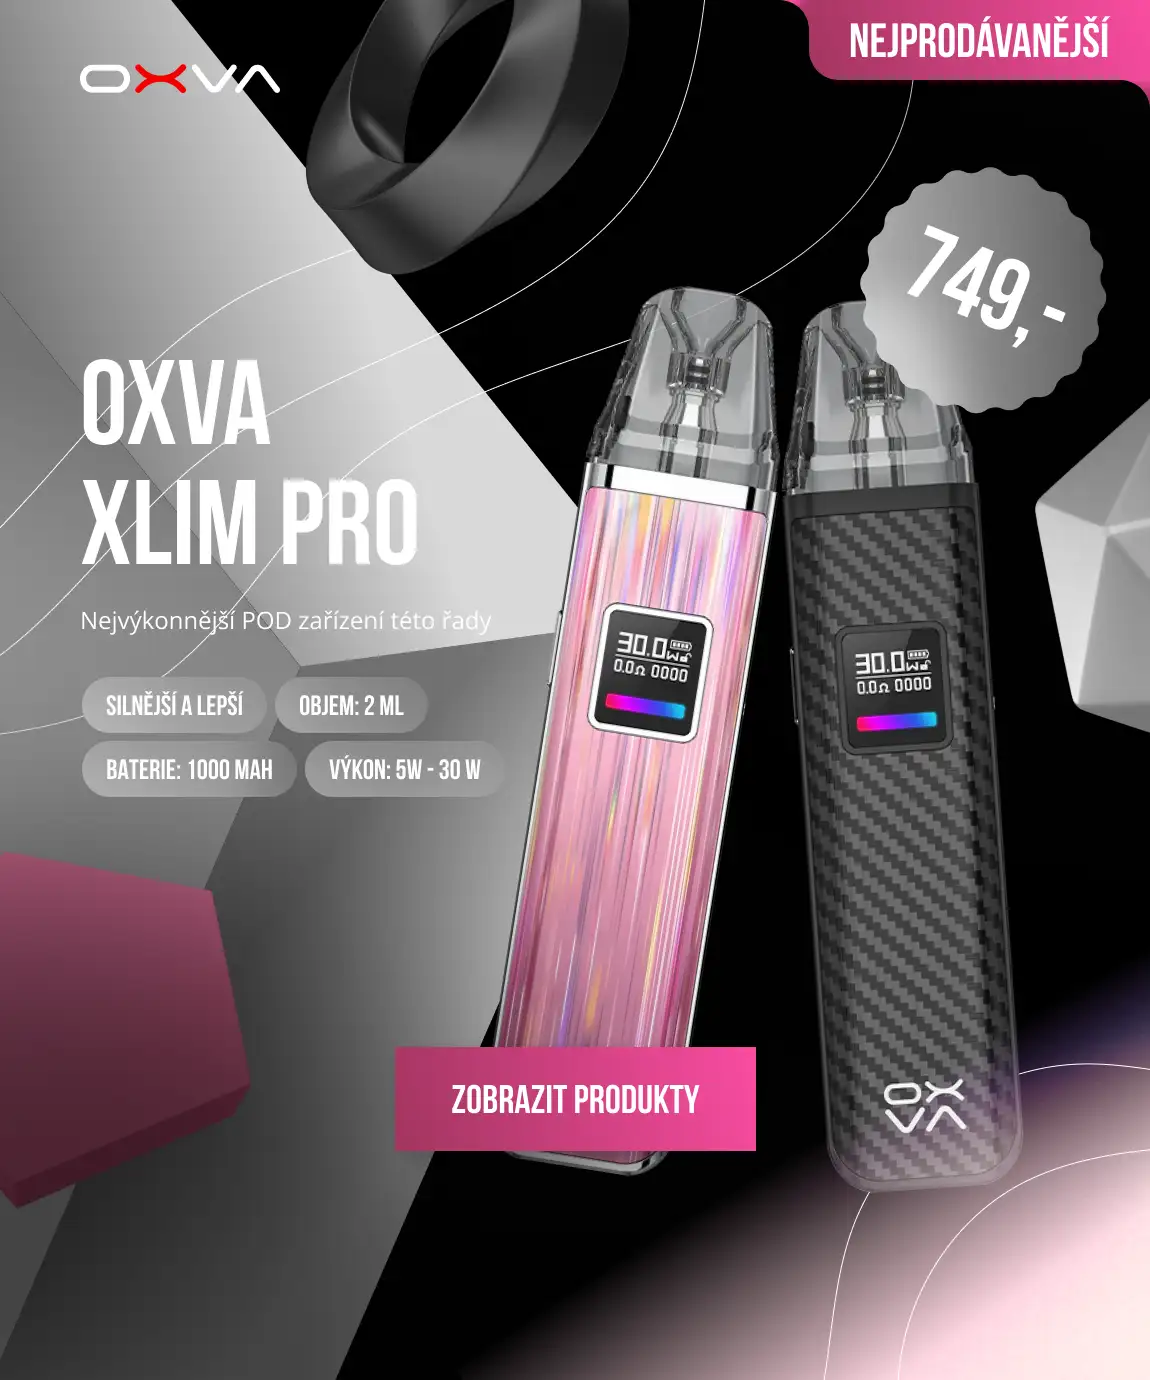 OXVA XLIM PRO: Nejvýkonnější POD zařízení této řady